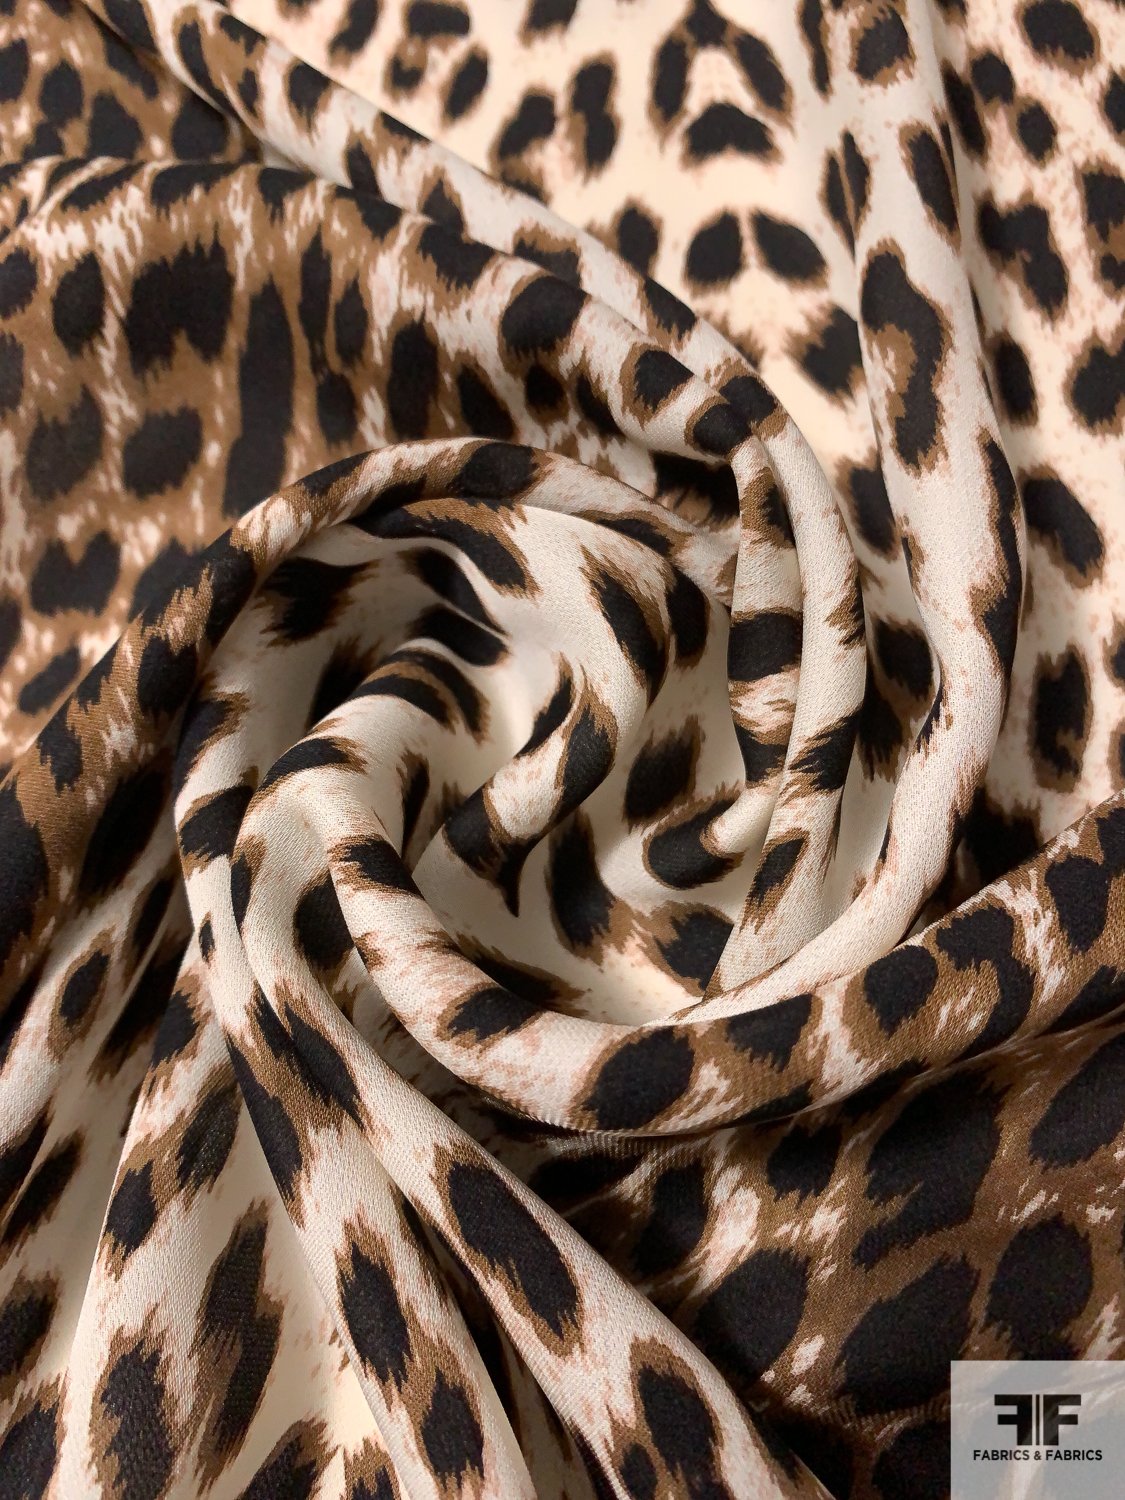 Animal Pattern Printed Silk Georgette - Brown/Black/White